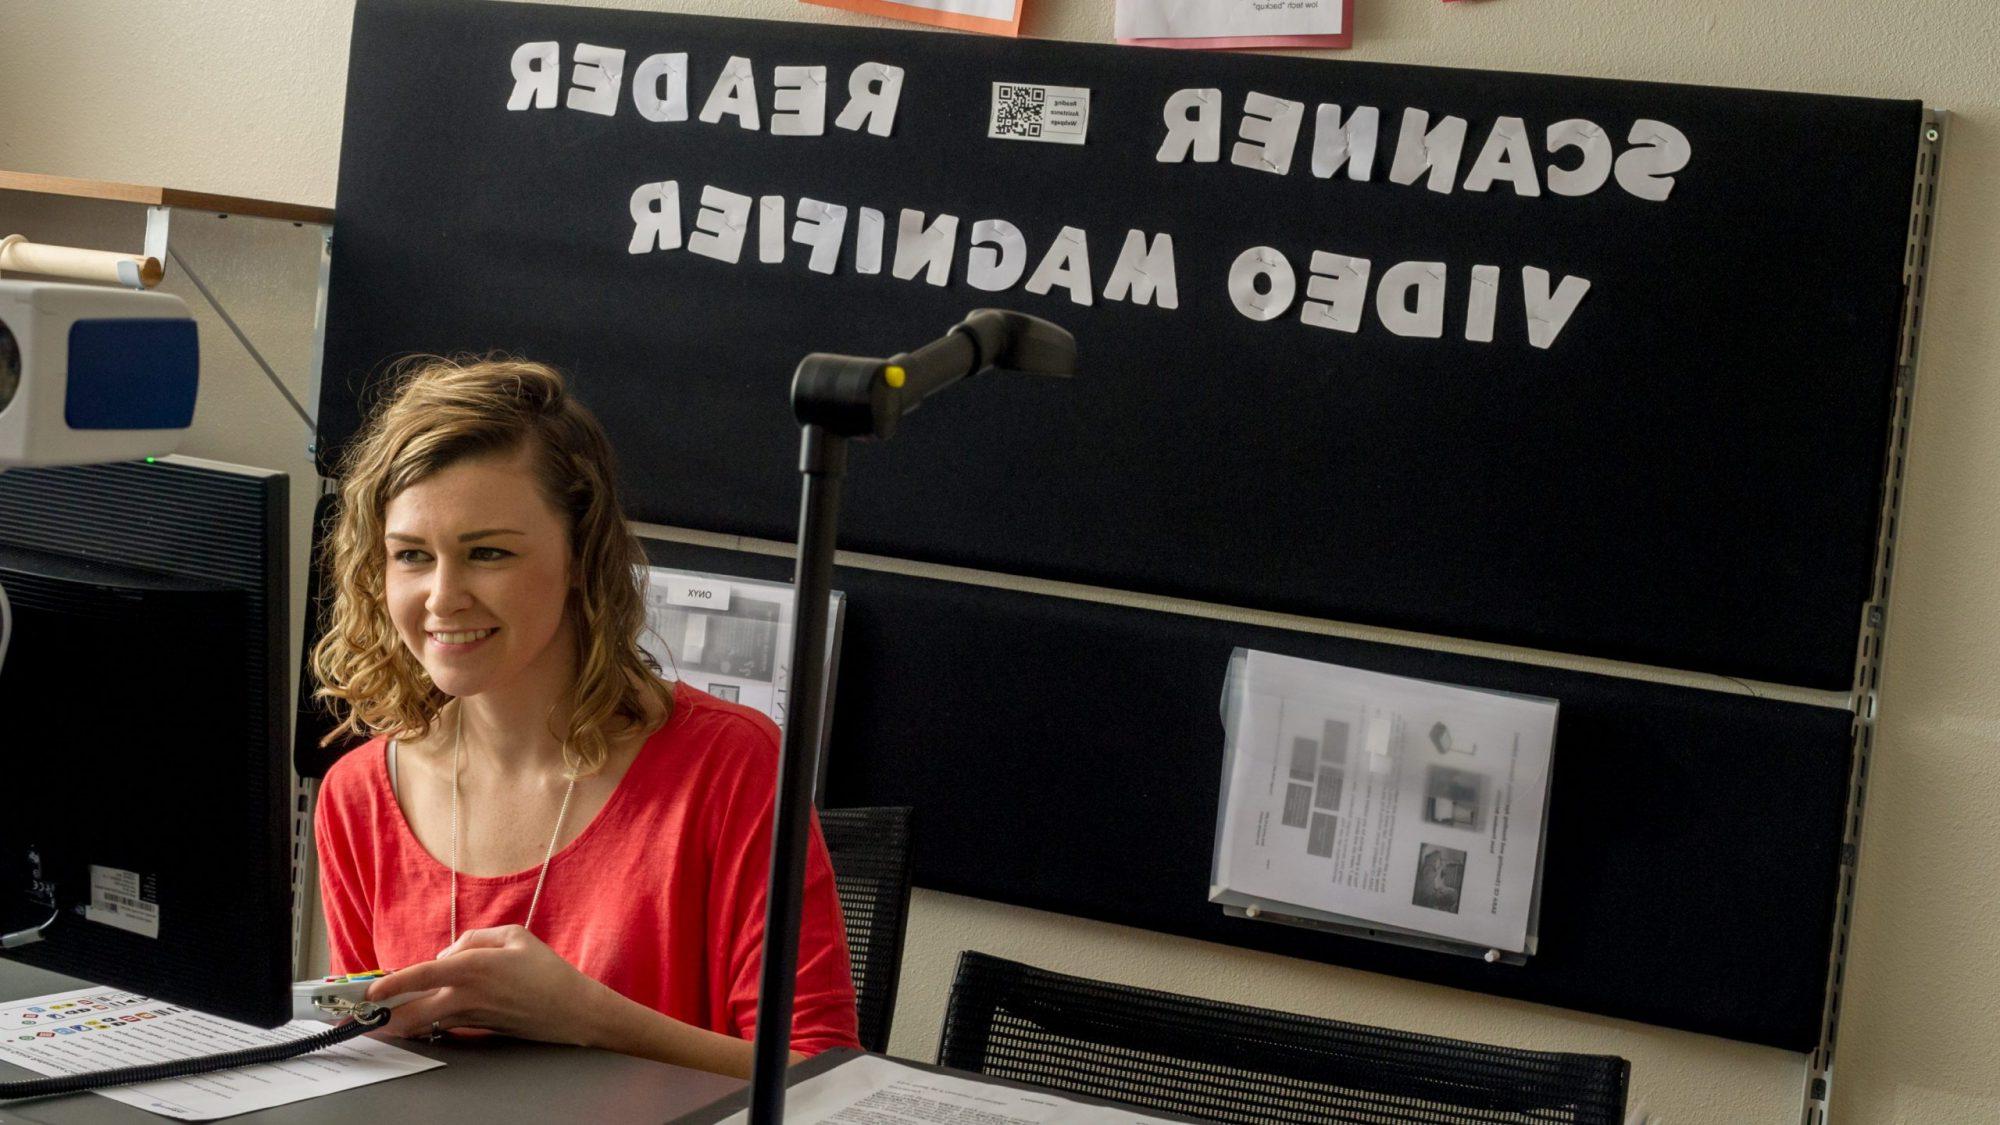 一名女学生站在一个写着扫描仪阅读器视频放大镜的牌子前.